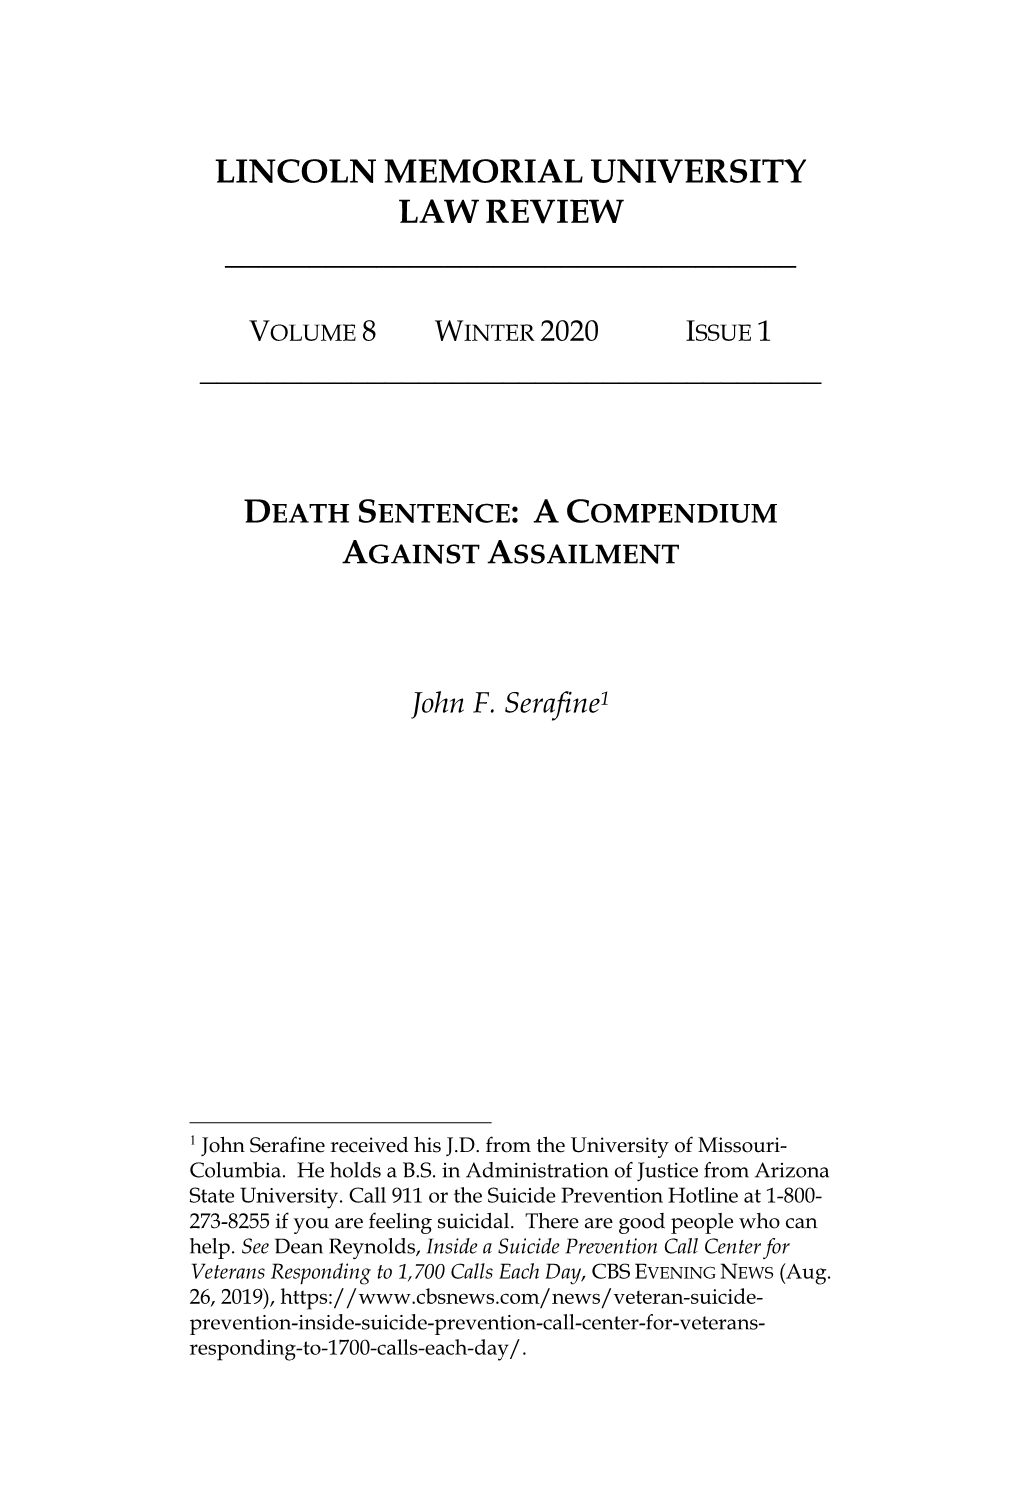 Death Sentence: a Compendium Against Assailment